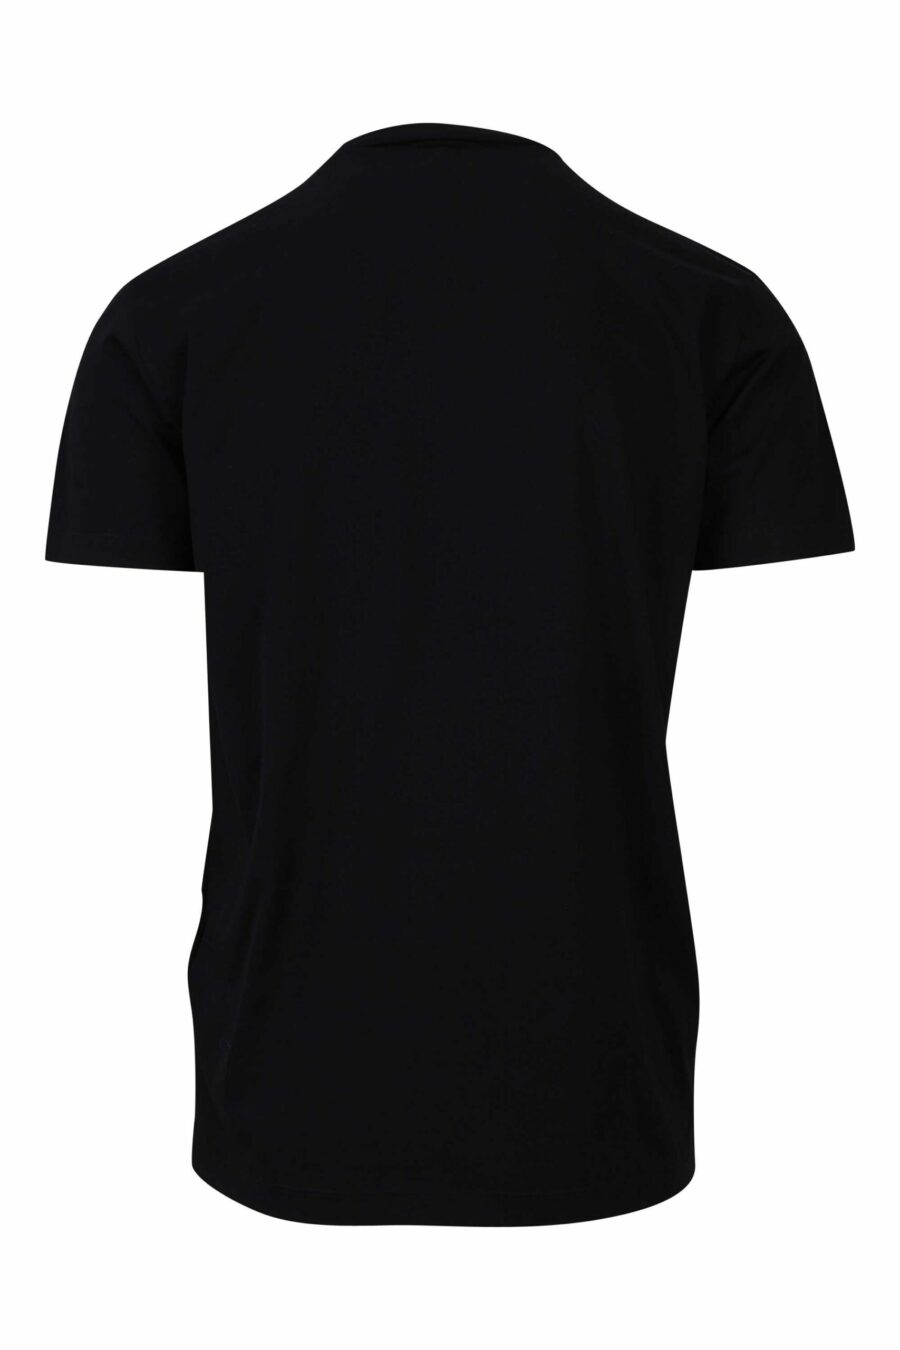 Camiseta negra con maxilogo gotico azul y rojo - 8054148085940 1 1 scaled